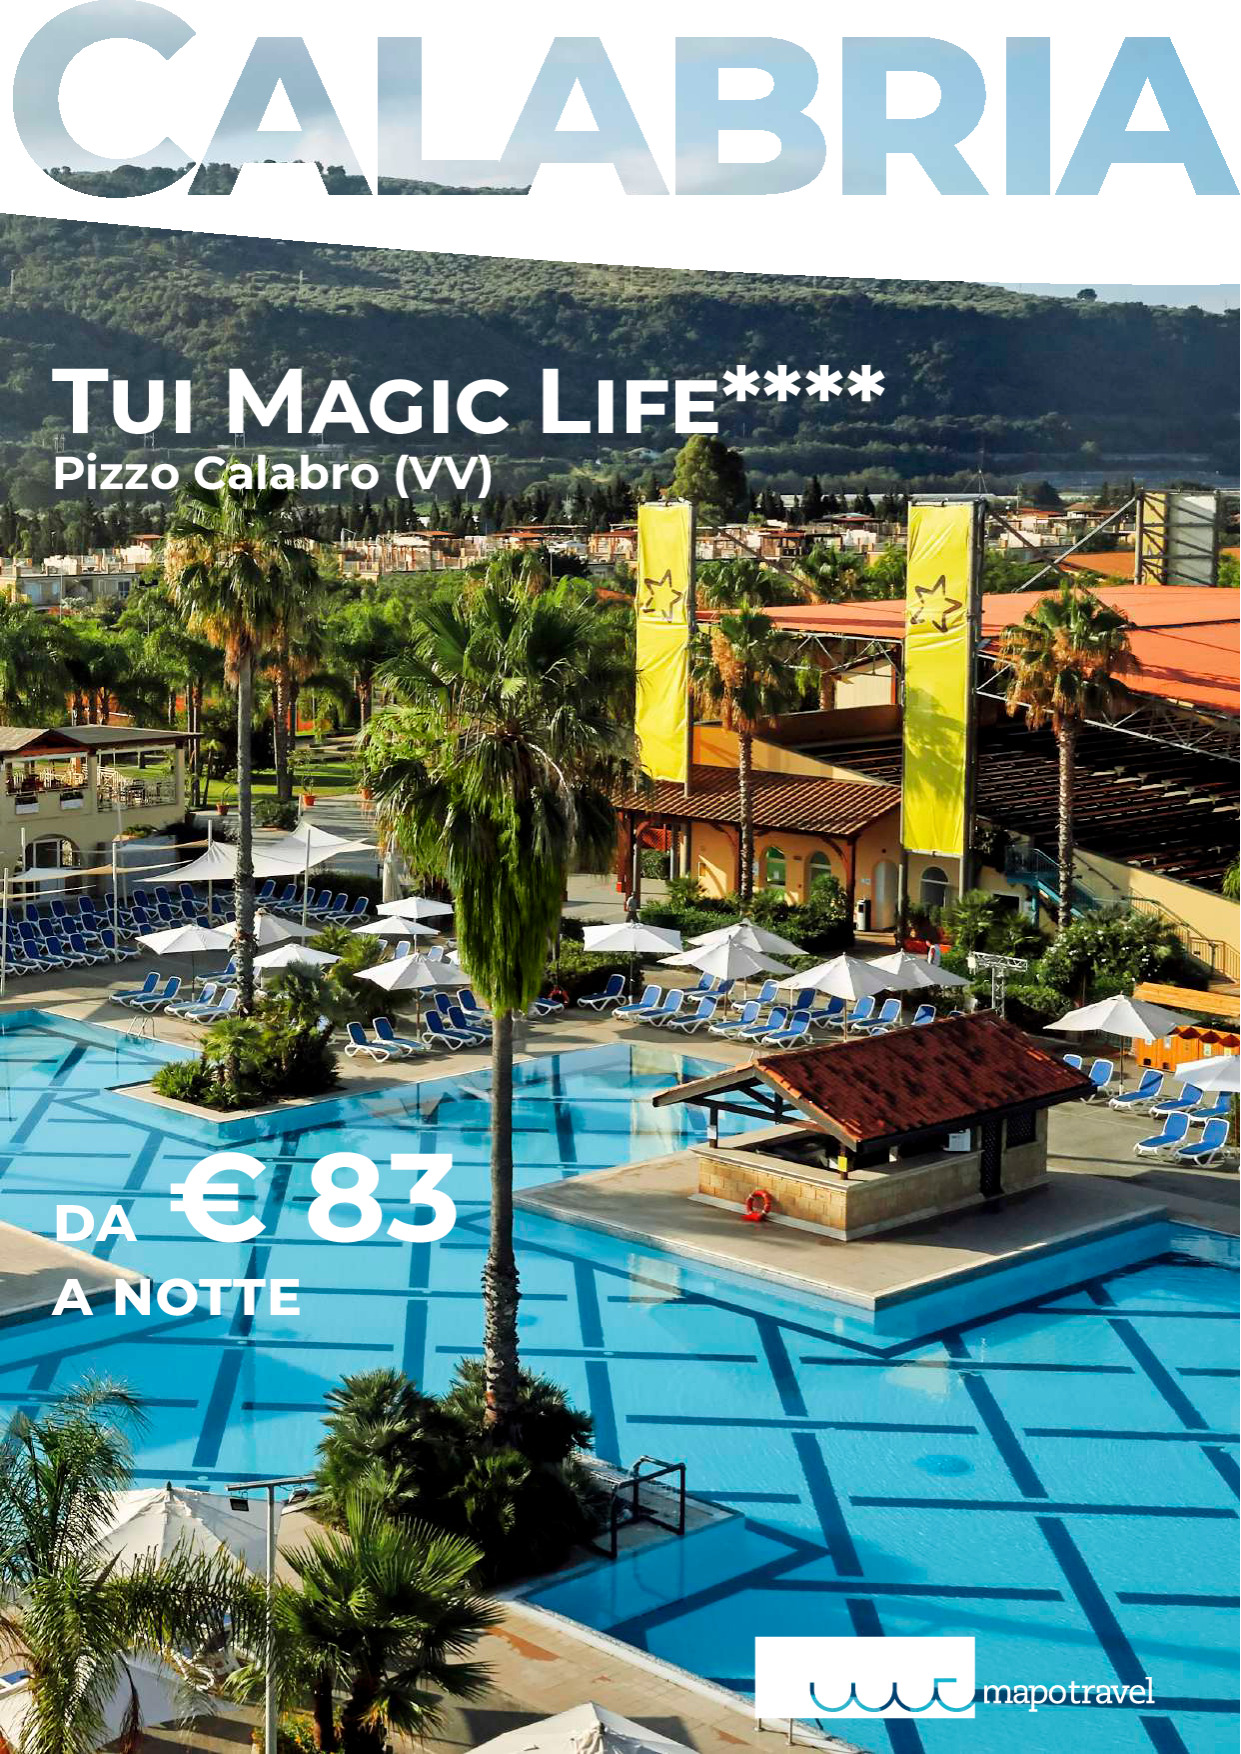 Tui Magic Life: Top All Inclusive Resort in Calabria